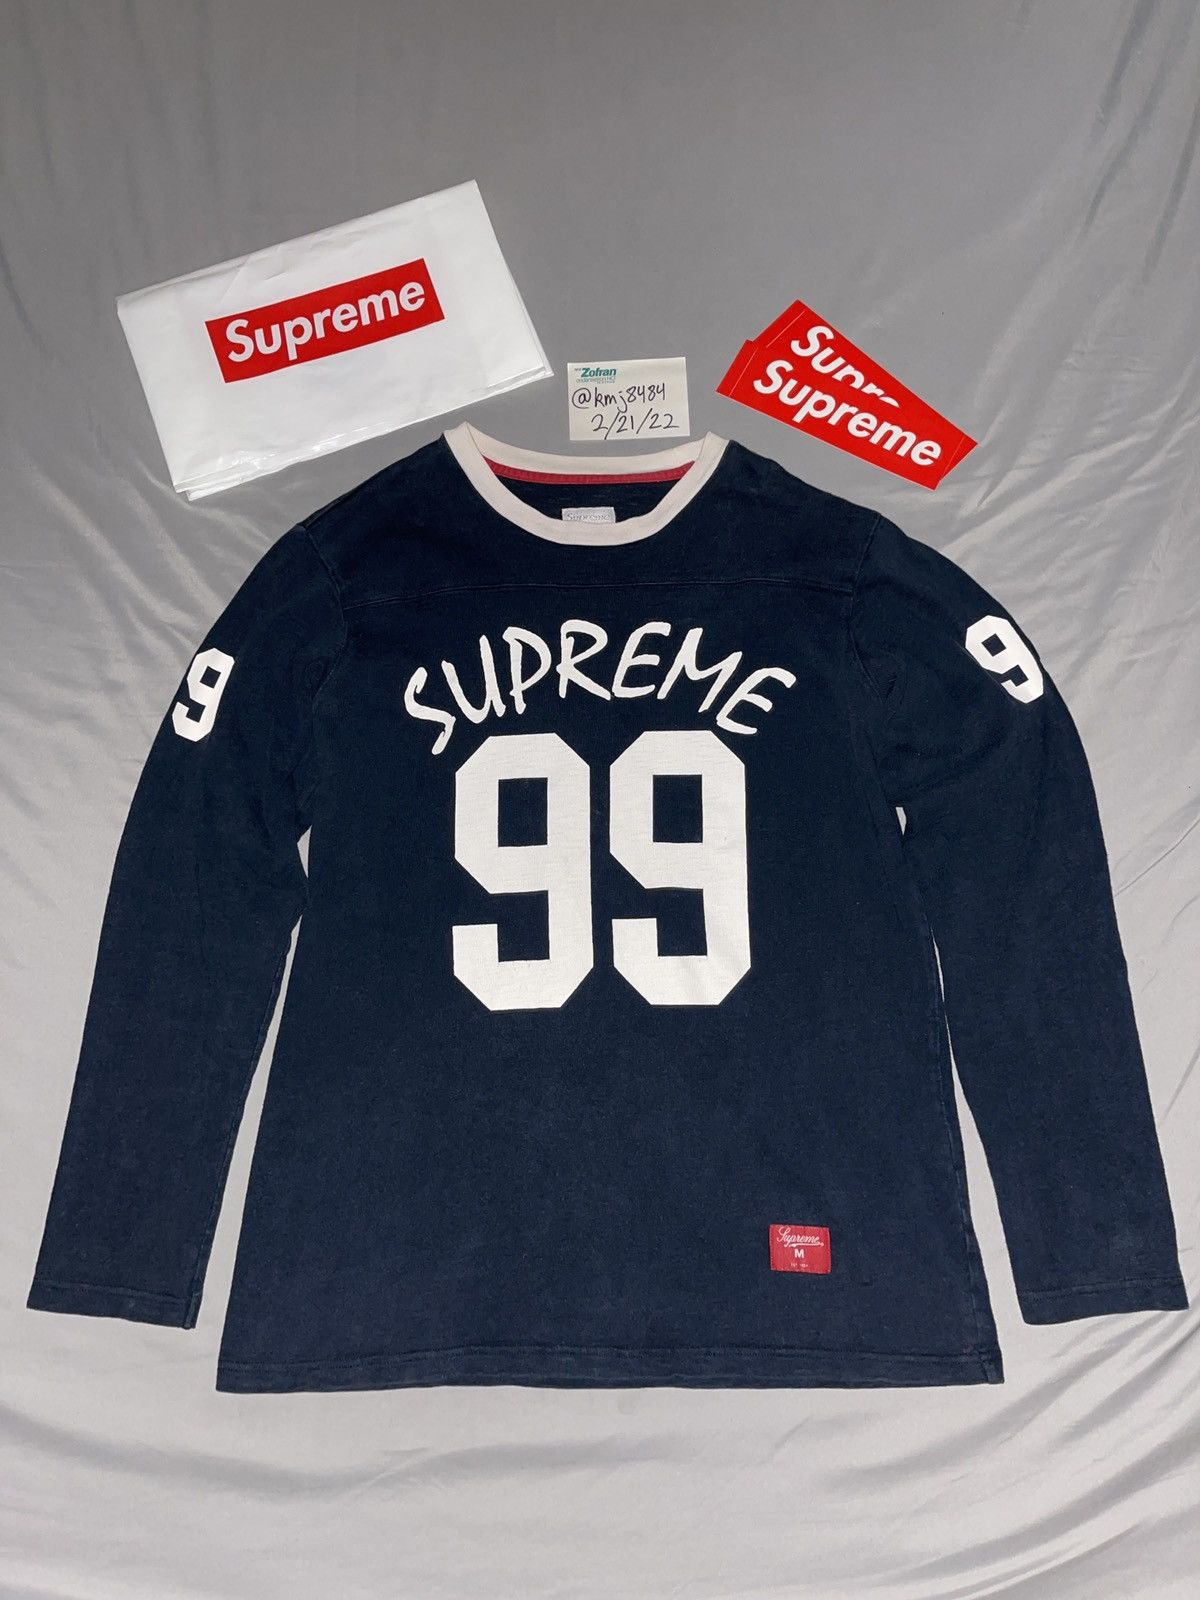 Supreme Supreme 99 Football Long sleeve shirt F/W 12 | Grailed